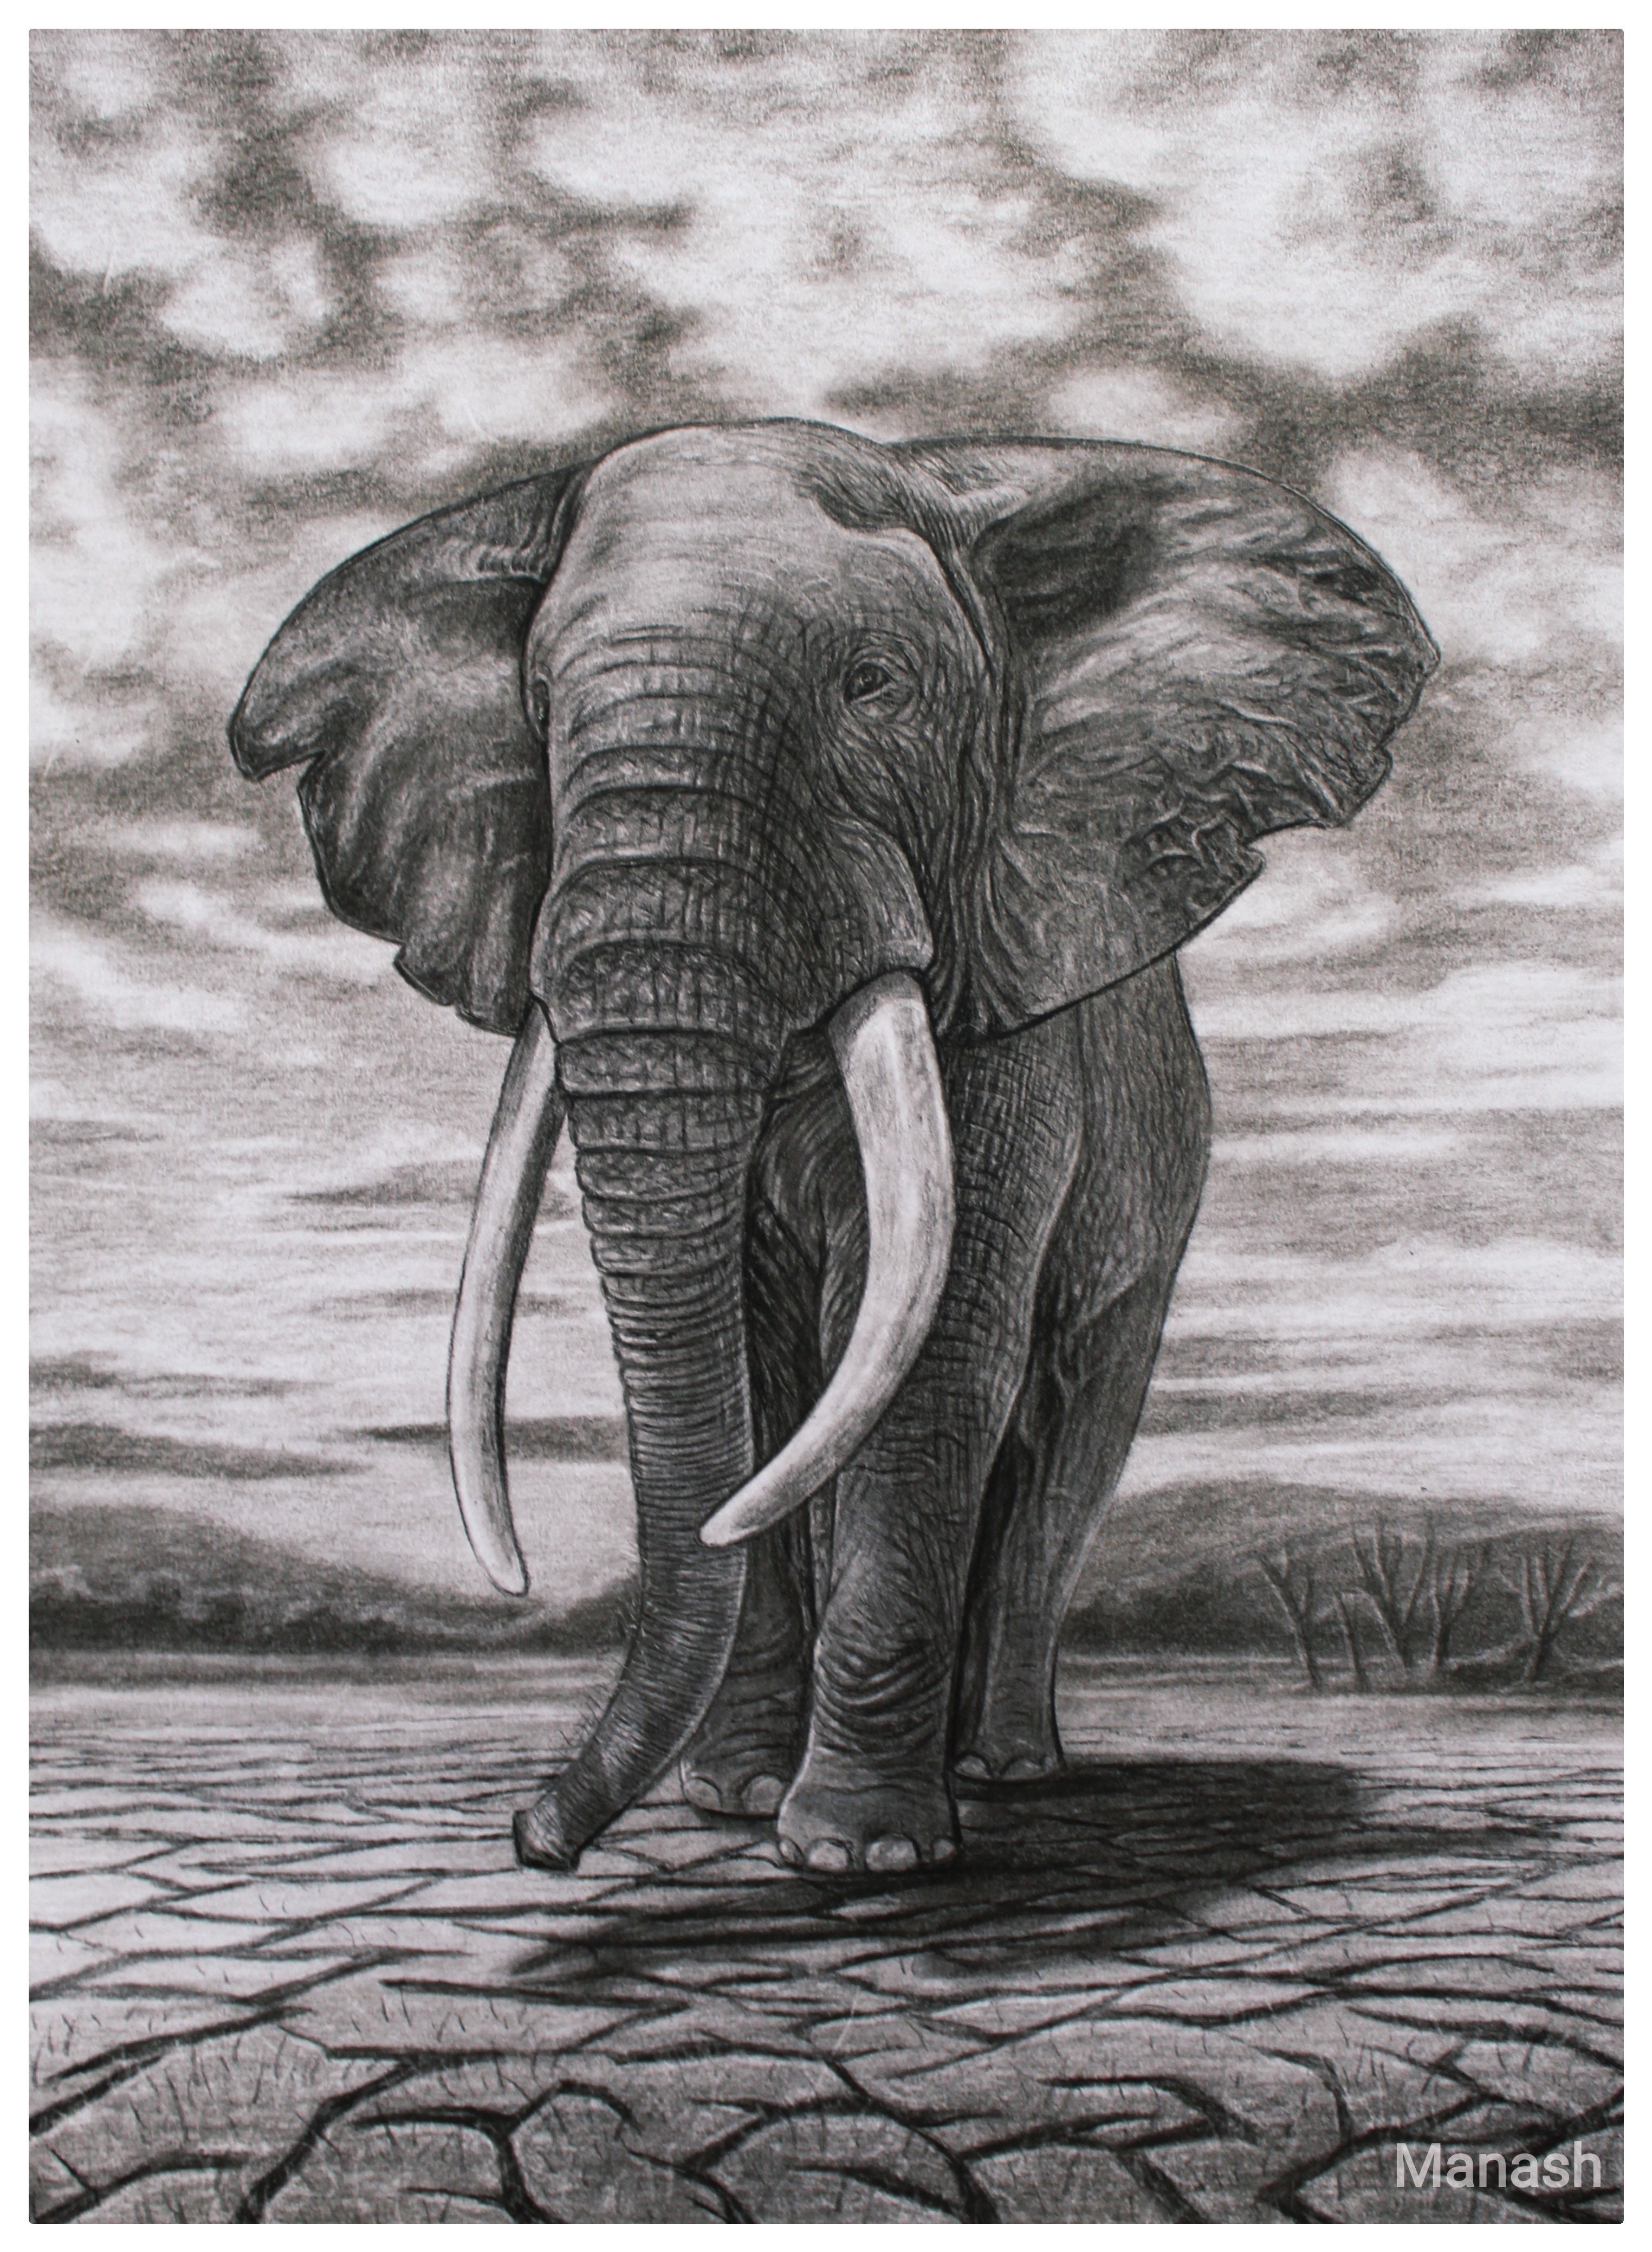 Four Legs And Five Feet Impossible Elephant Optical Illusion Will Leave You  Confused - इस तस्वीर में आपको हाथी के कितने पैर दिखे 4 या 5 ? लोगों का  चकराया सिर, फिर